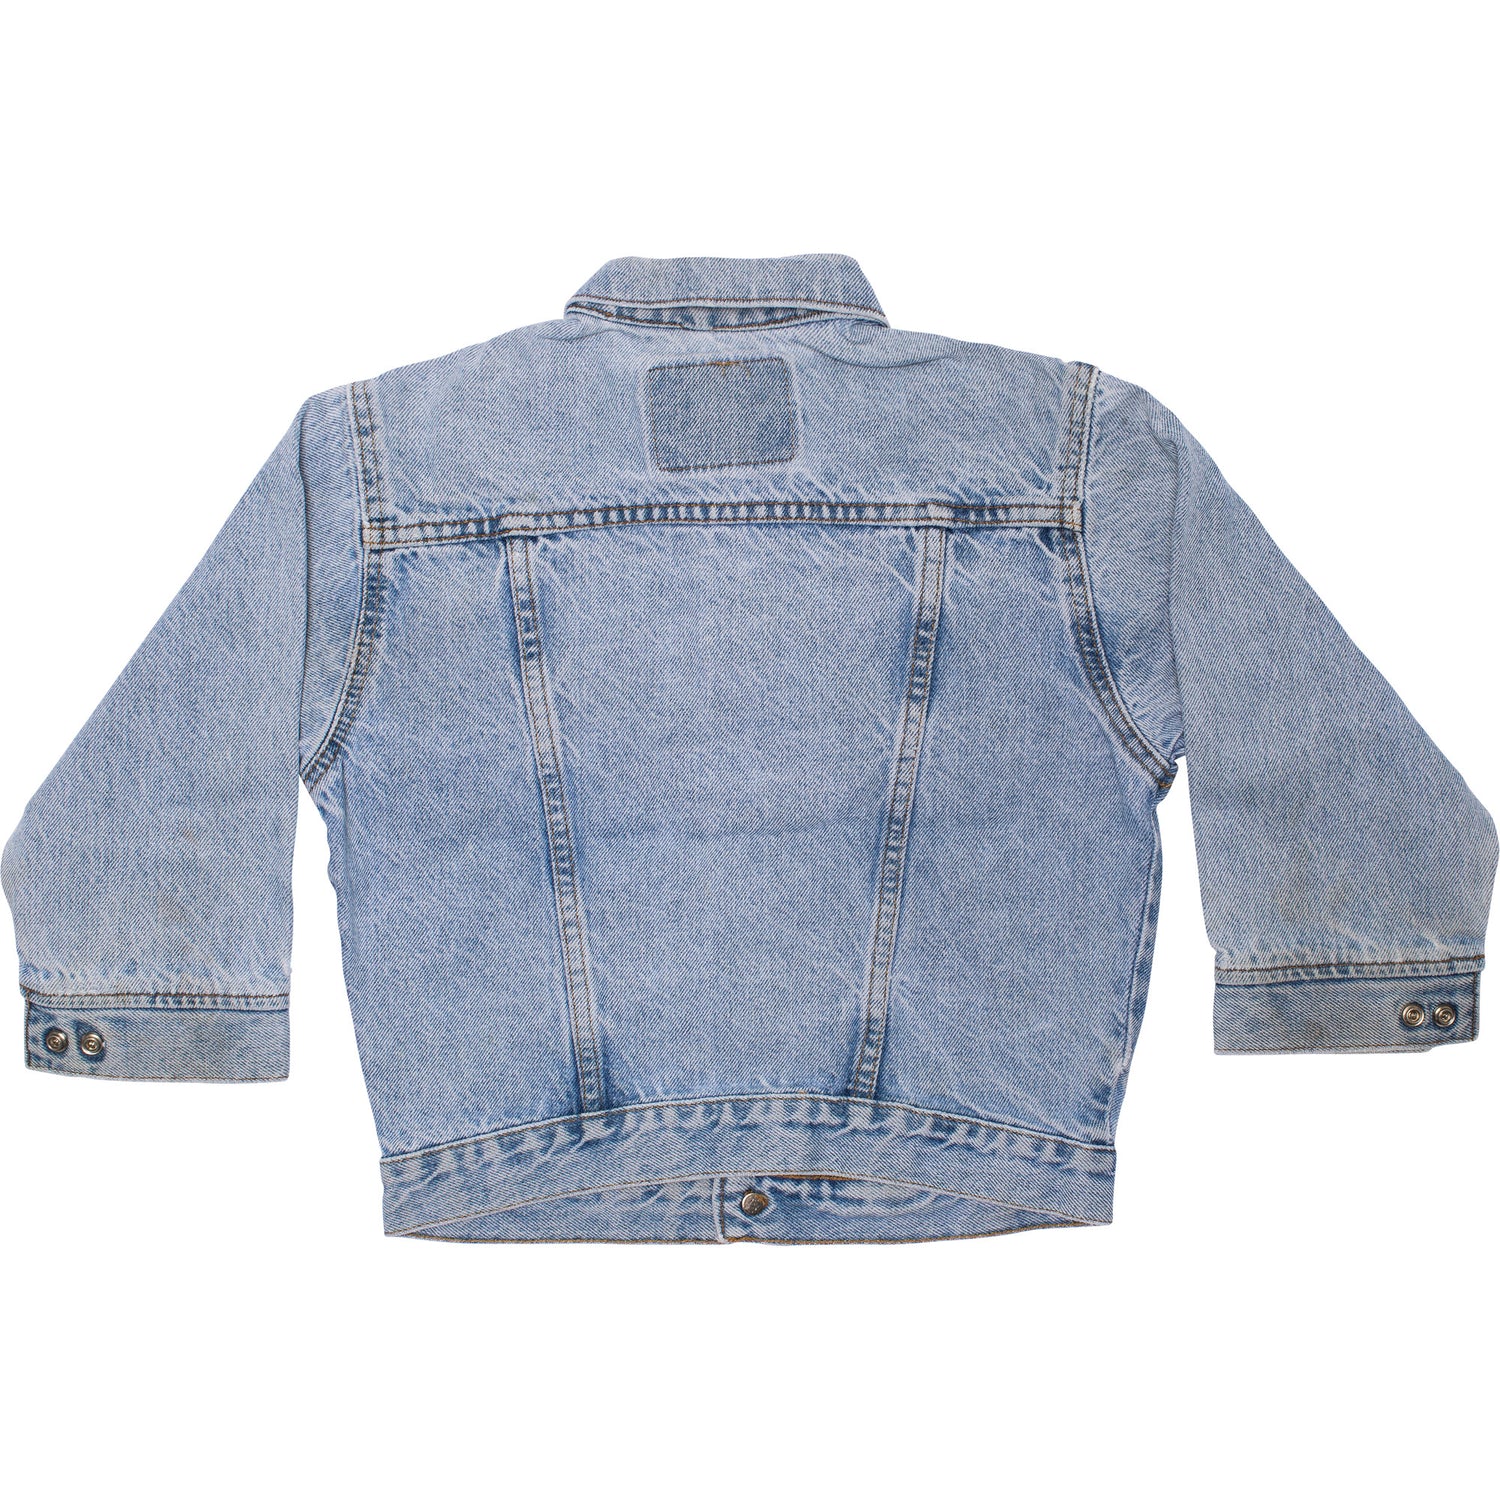 KIDS Levi's Vintage Denim Jacket